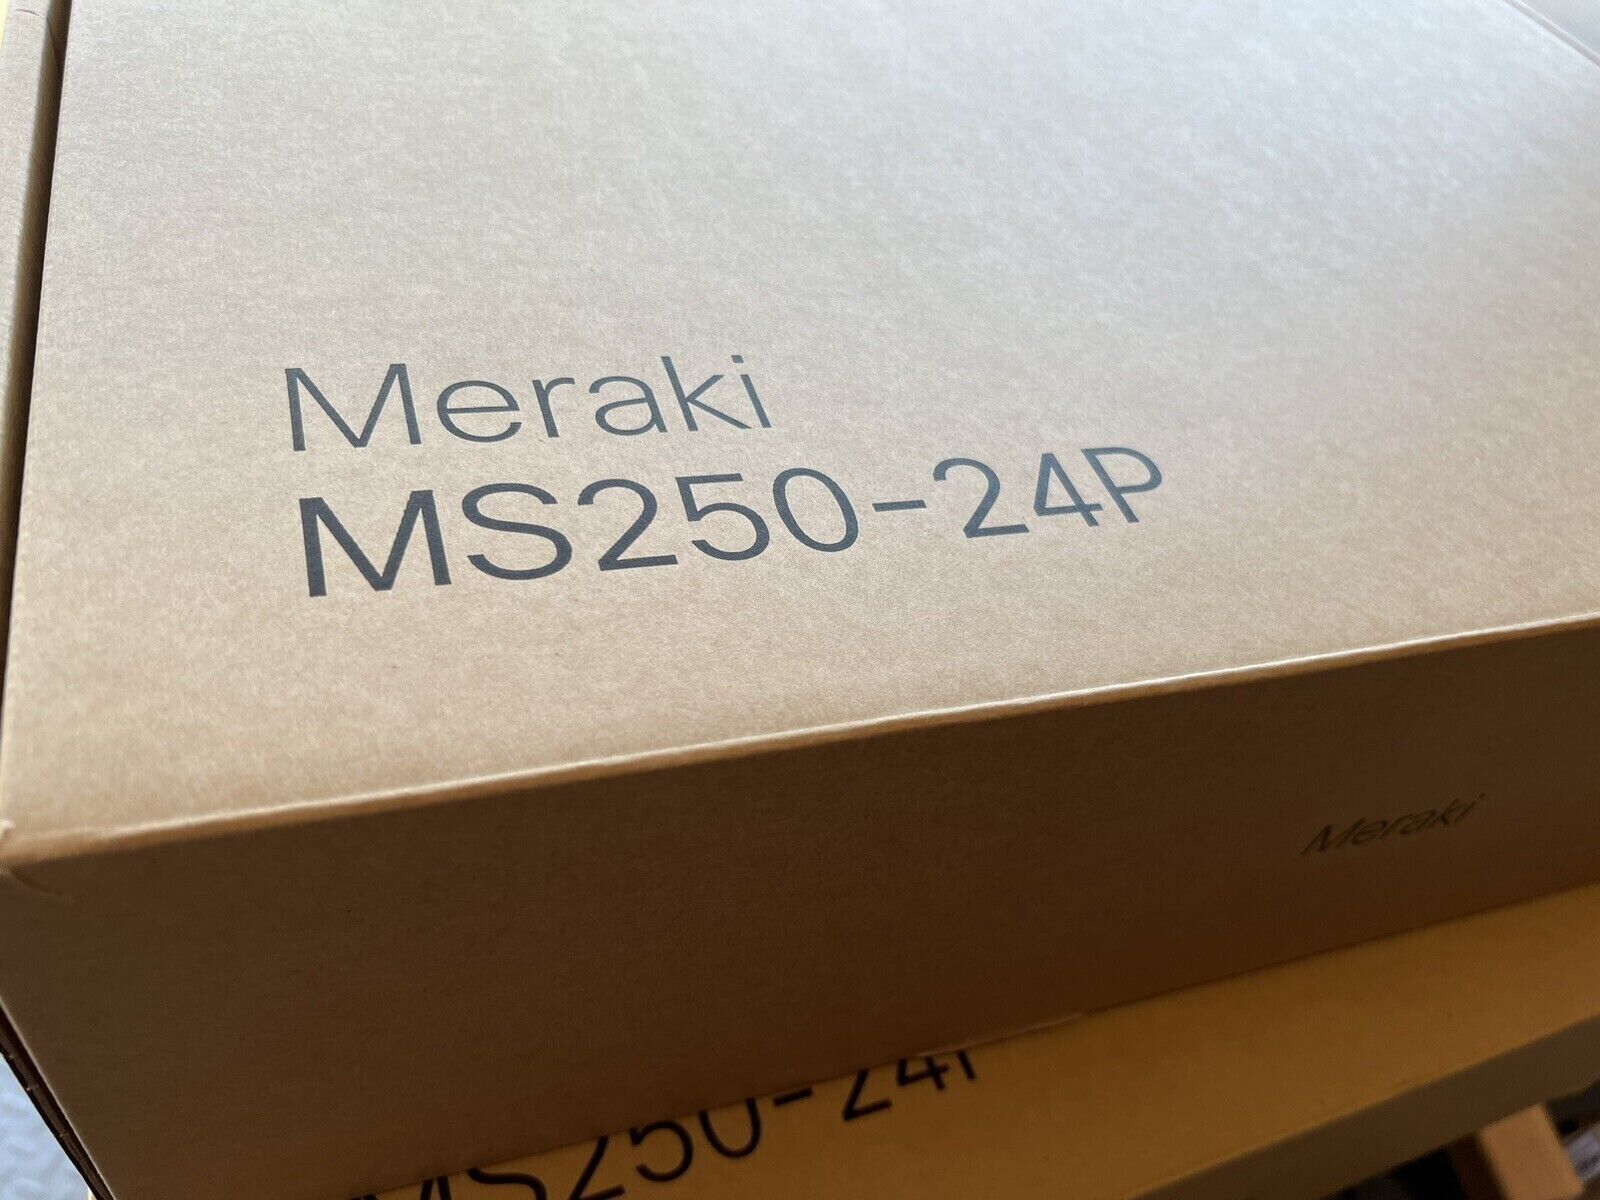 New Cisco MS250-24P-HW Meraki MS250 24-Port Gigabit PoE+ Switch - 1 YR Wrnty